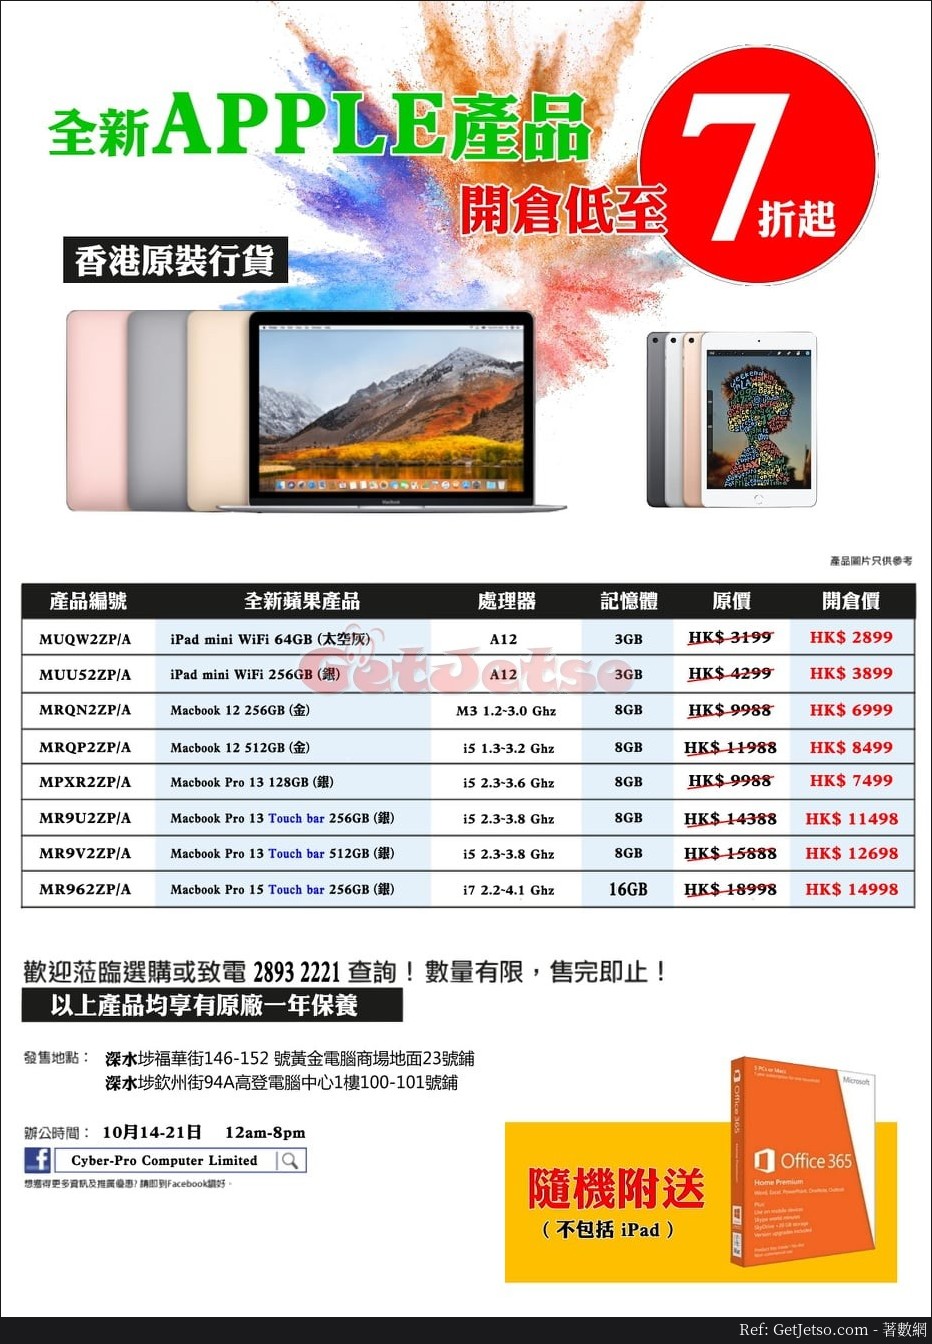 低至7折Apple 電腦減價優惠@Cyber-Pro深水埗店(至19年10月21日)圖片1